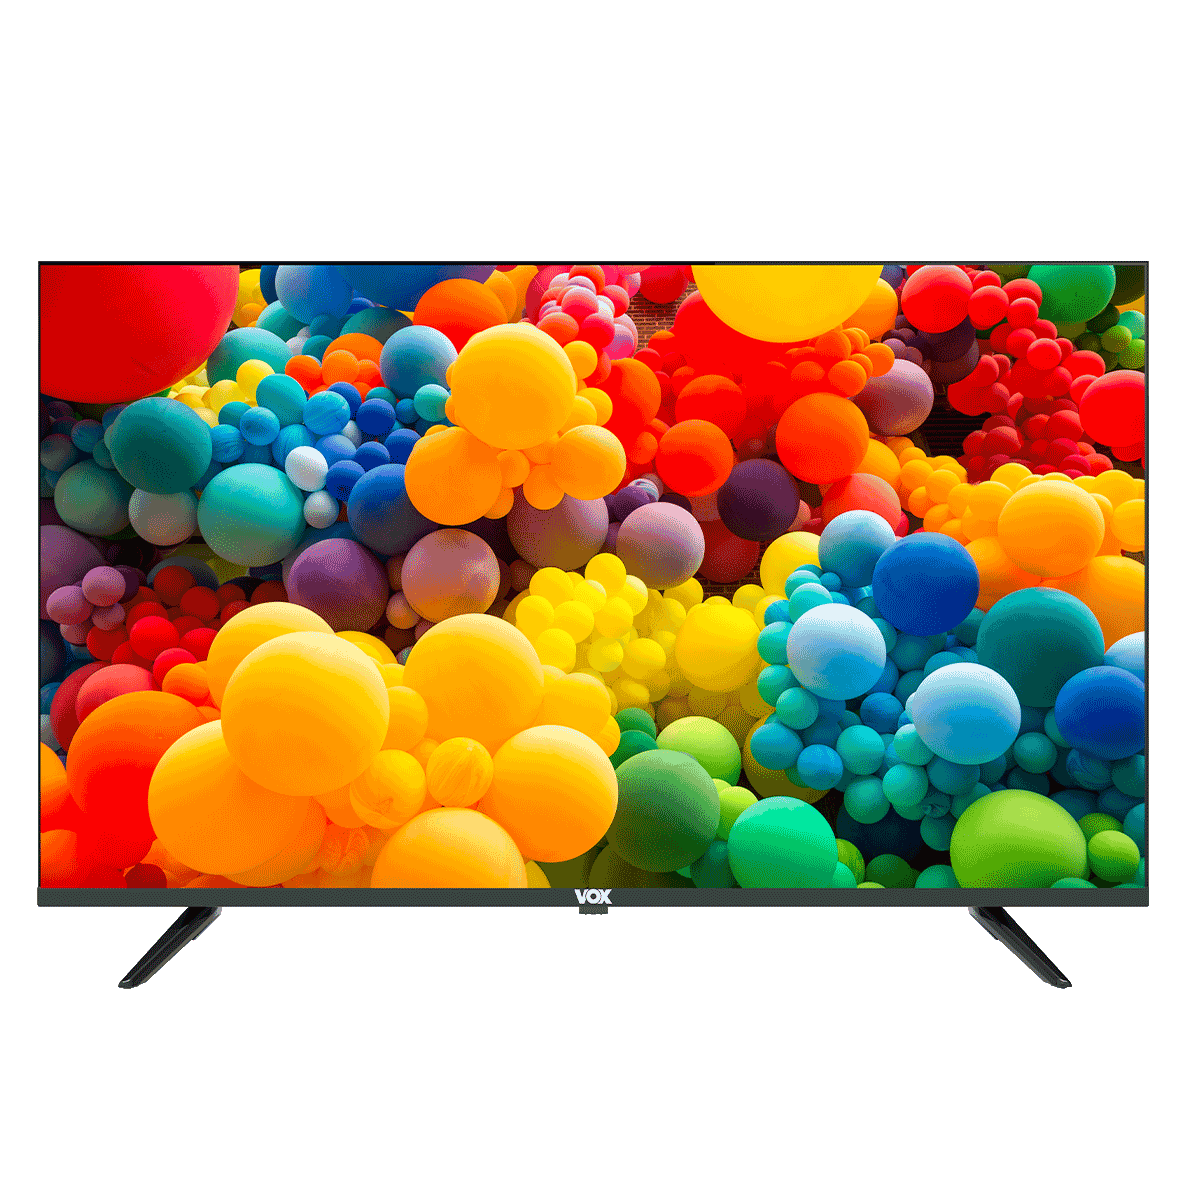 VOX Smart TV 43A11FGF10B LED Full HD DVB-T2/C/S2 43"(109cm) црна